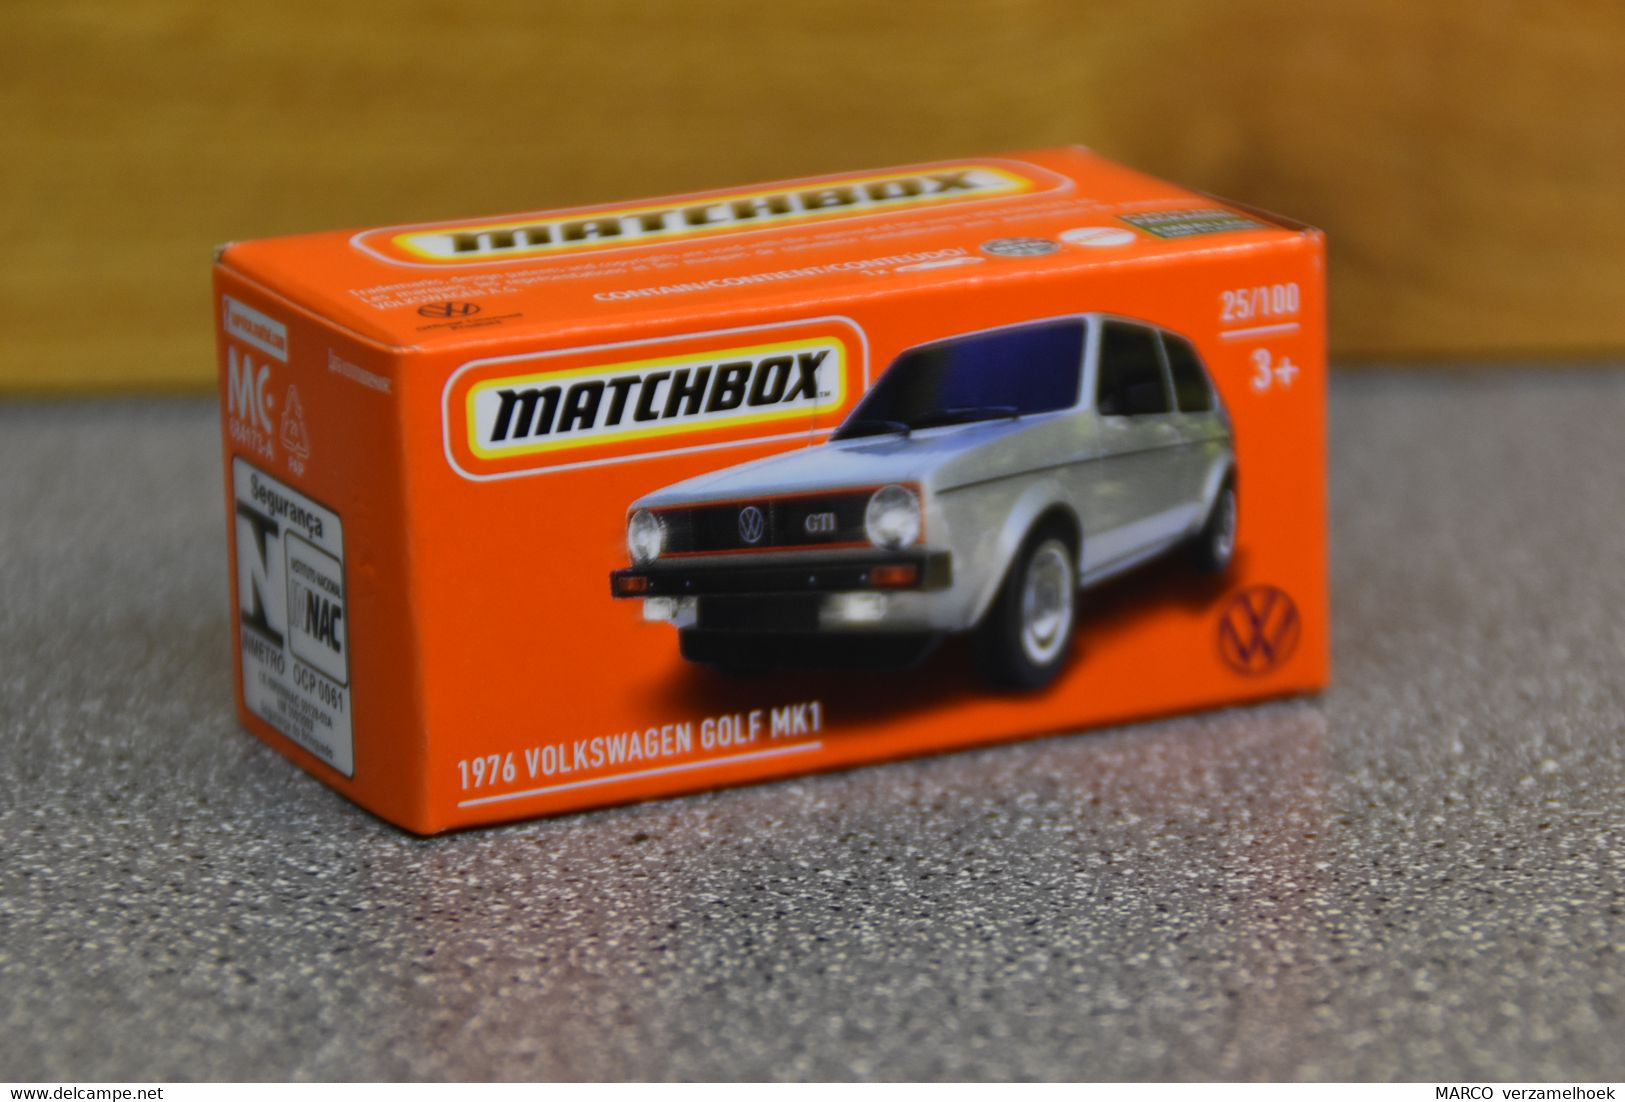 Mattel - Matchbox 25/100 1976 VW-volkswagen Golf MK1 - Matchbox (Mattel)